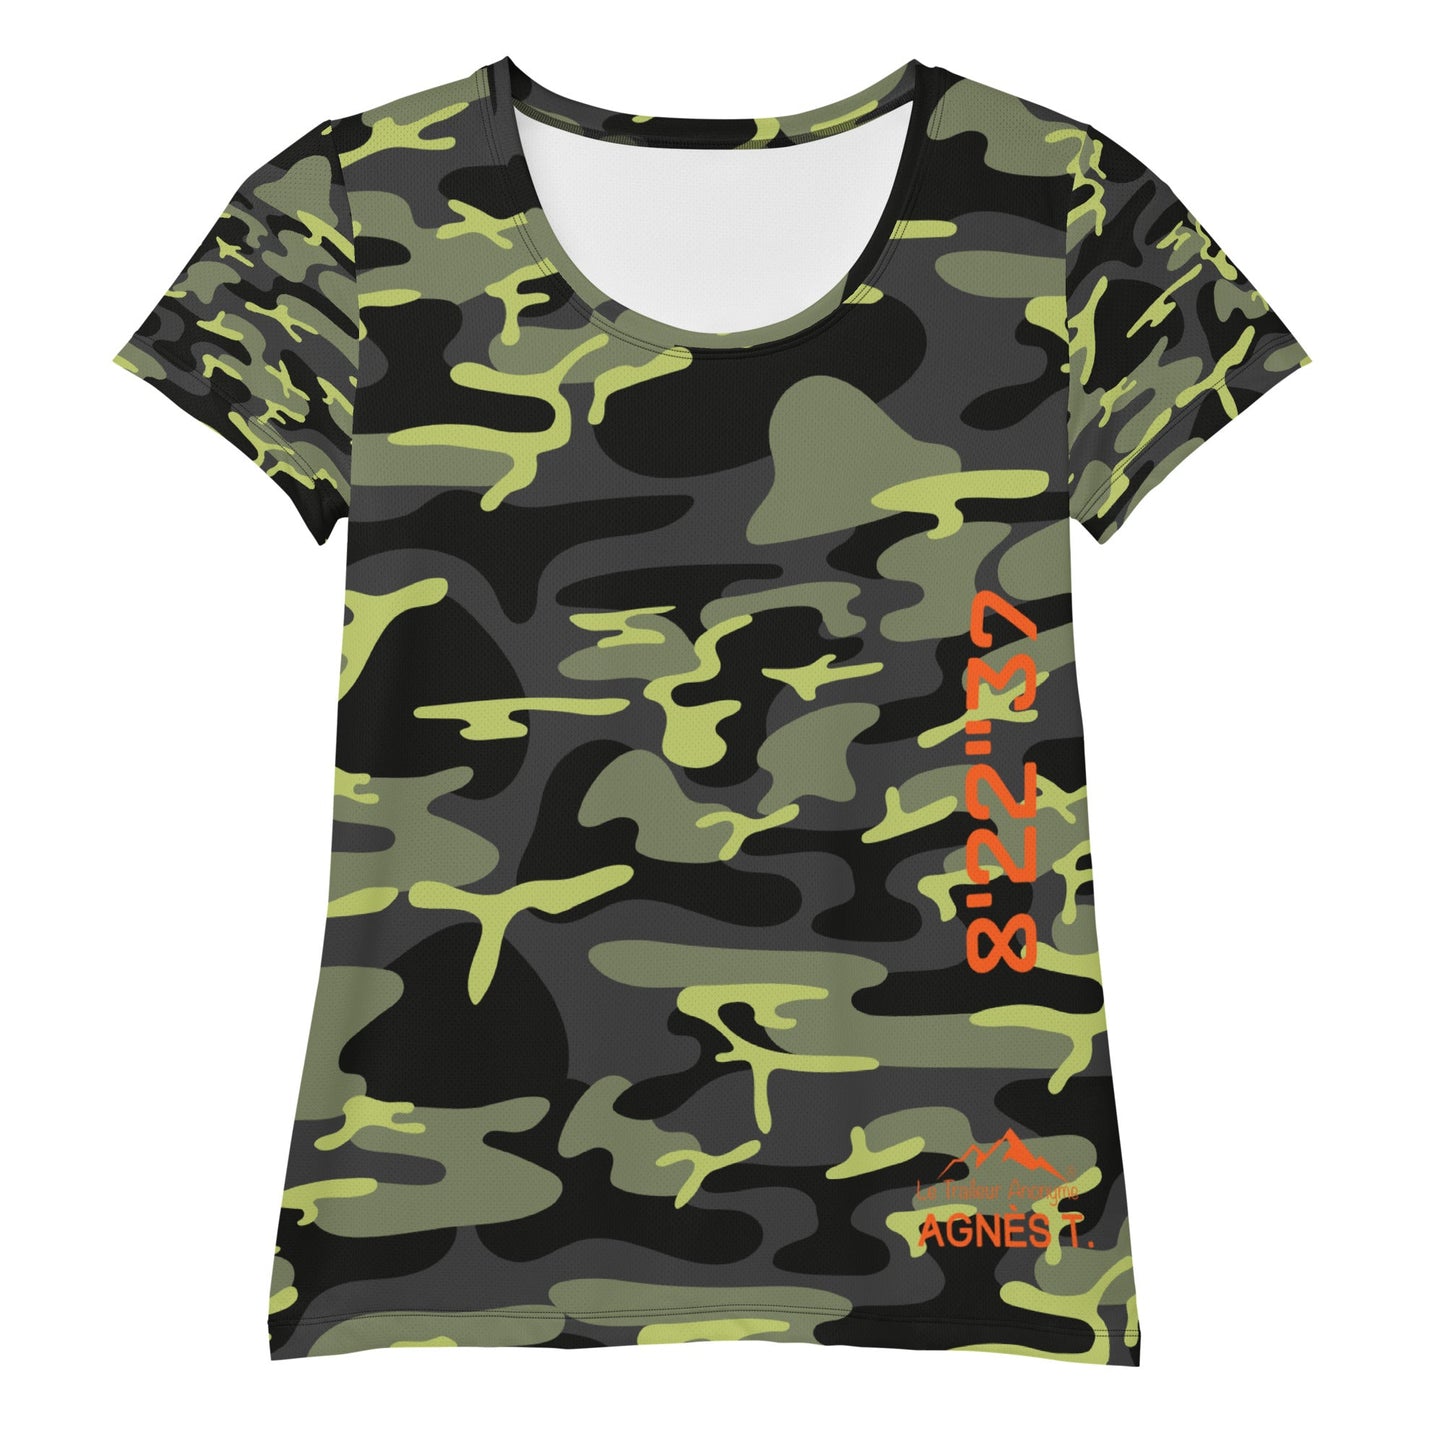 T-Shirt Sport - Femme - Collection Hommage Army - Agnès T. - Le Traileur Anonyme